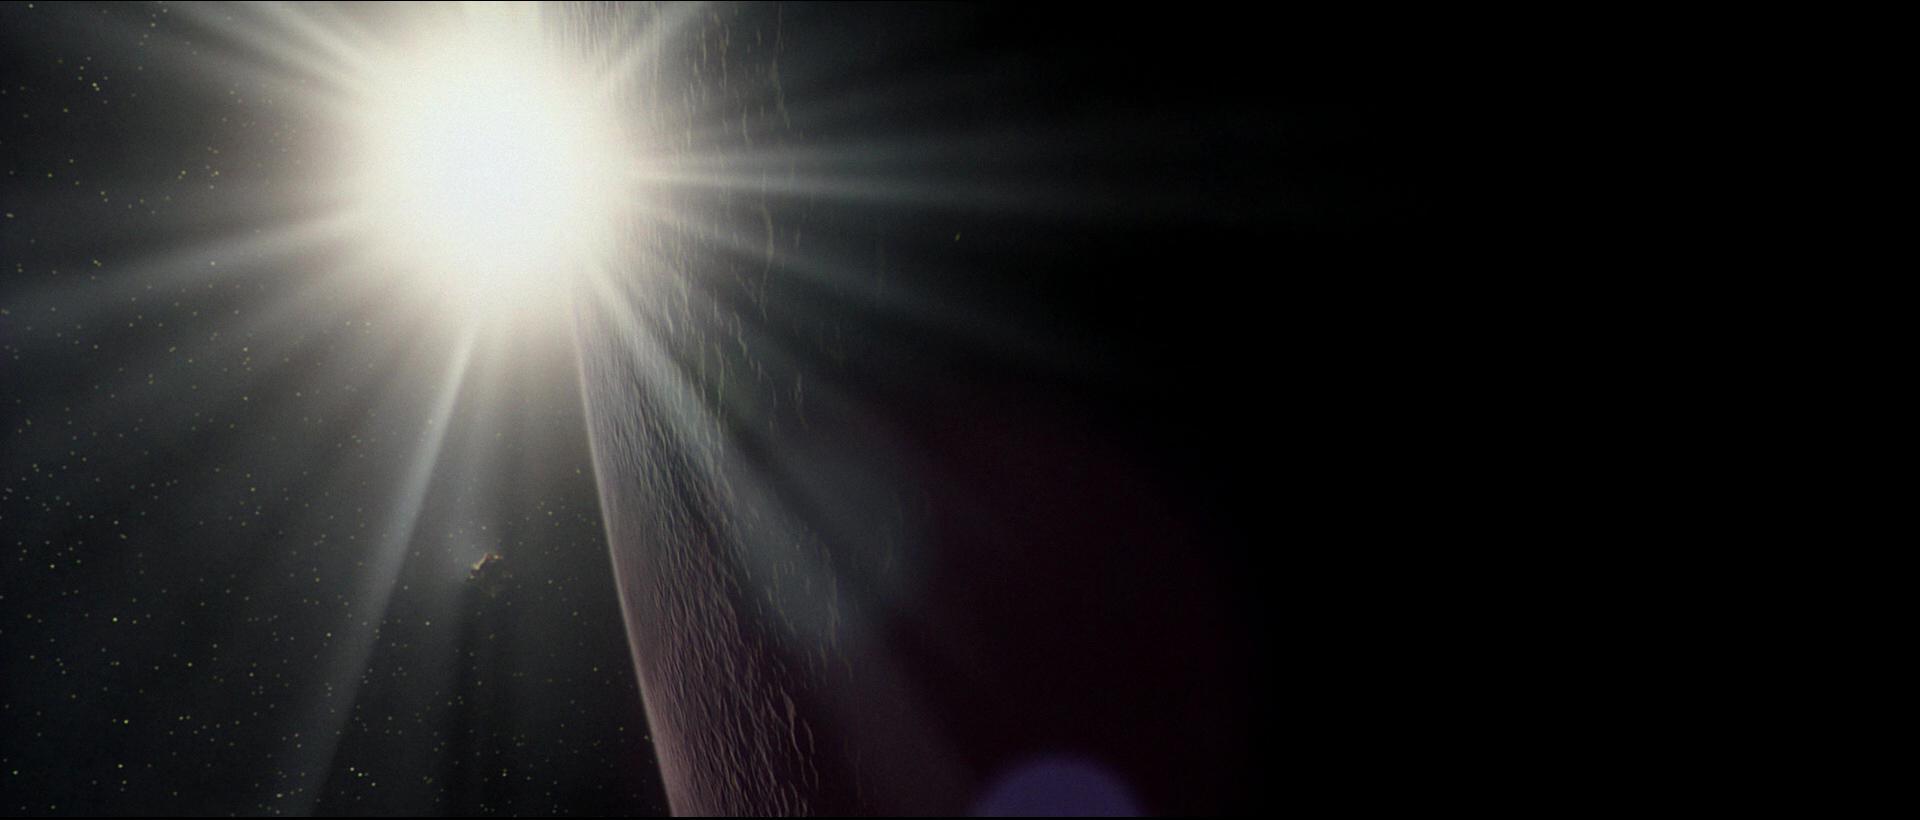 Apolo 13  - Fotogramas